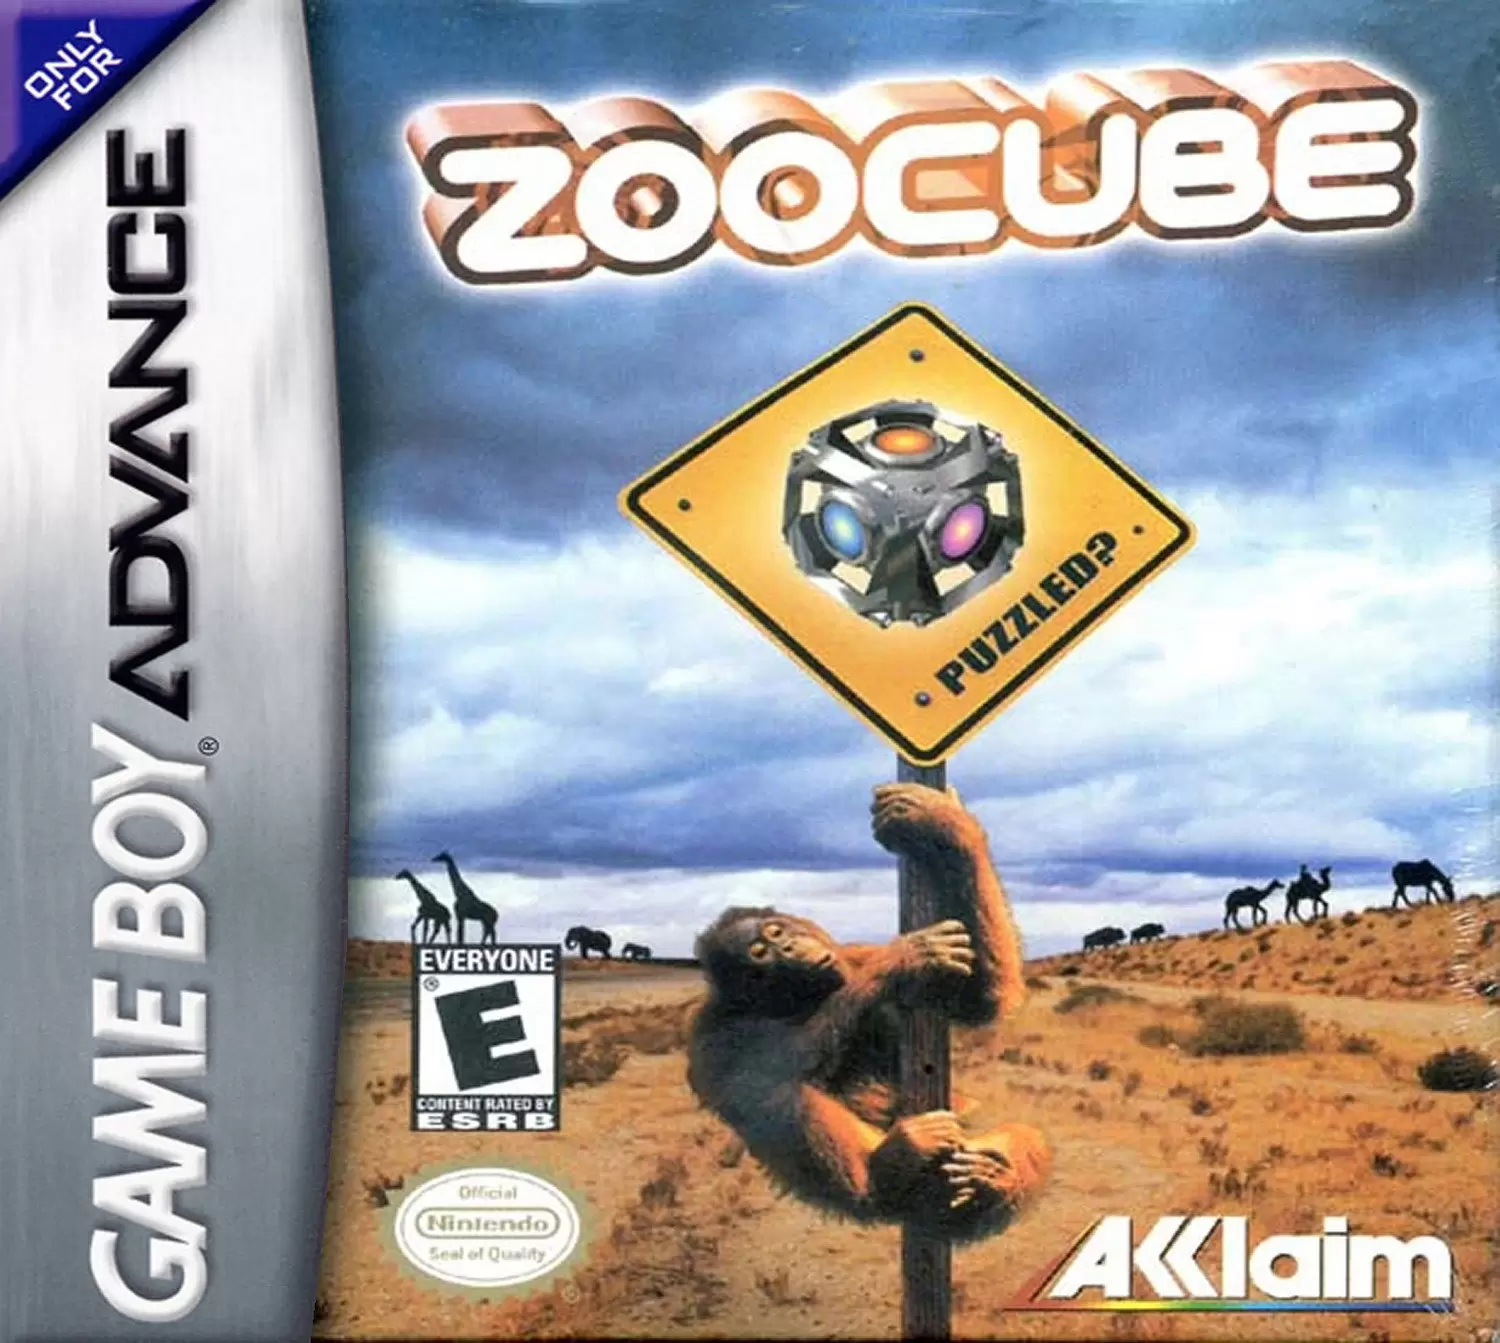 Game Boy Advance Games - ZooCube